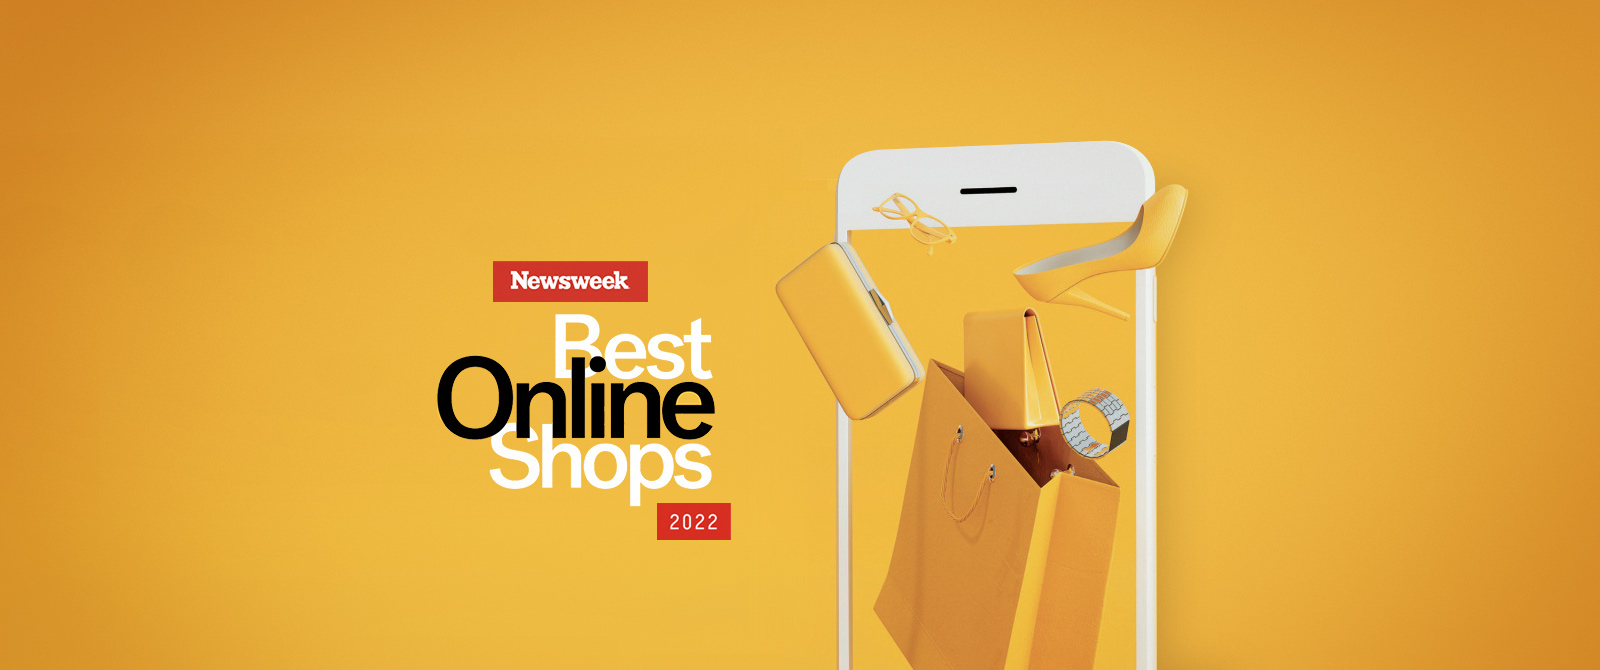 18 CQL Client Brands Named Newsweek’s Best Online Shops for 2022 CQL